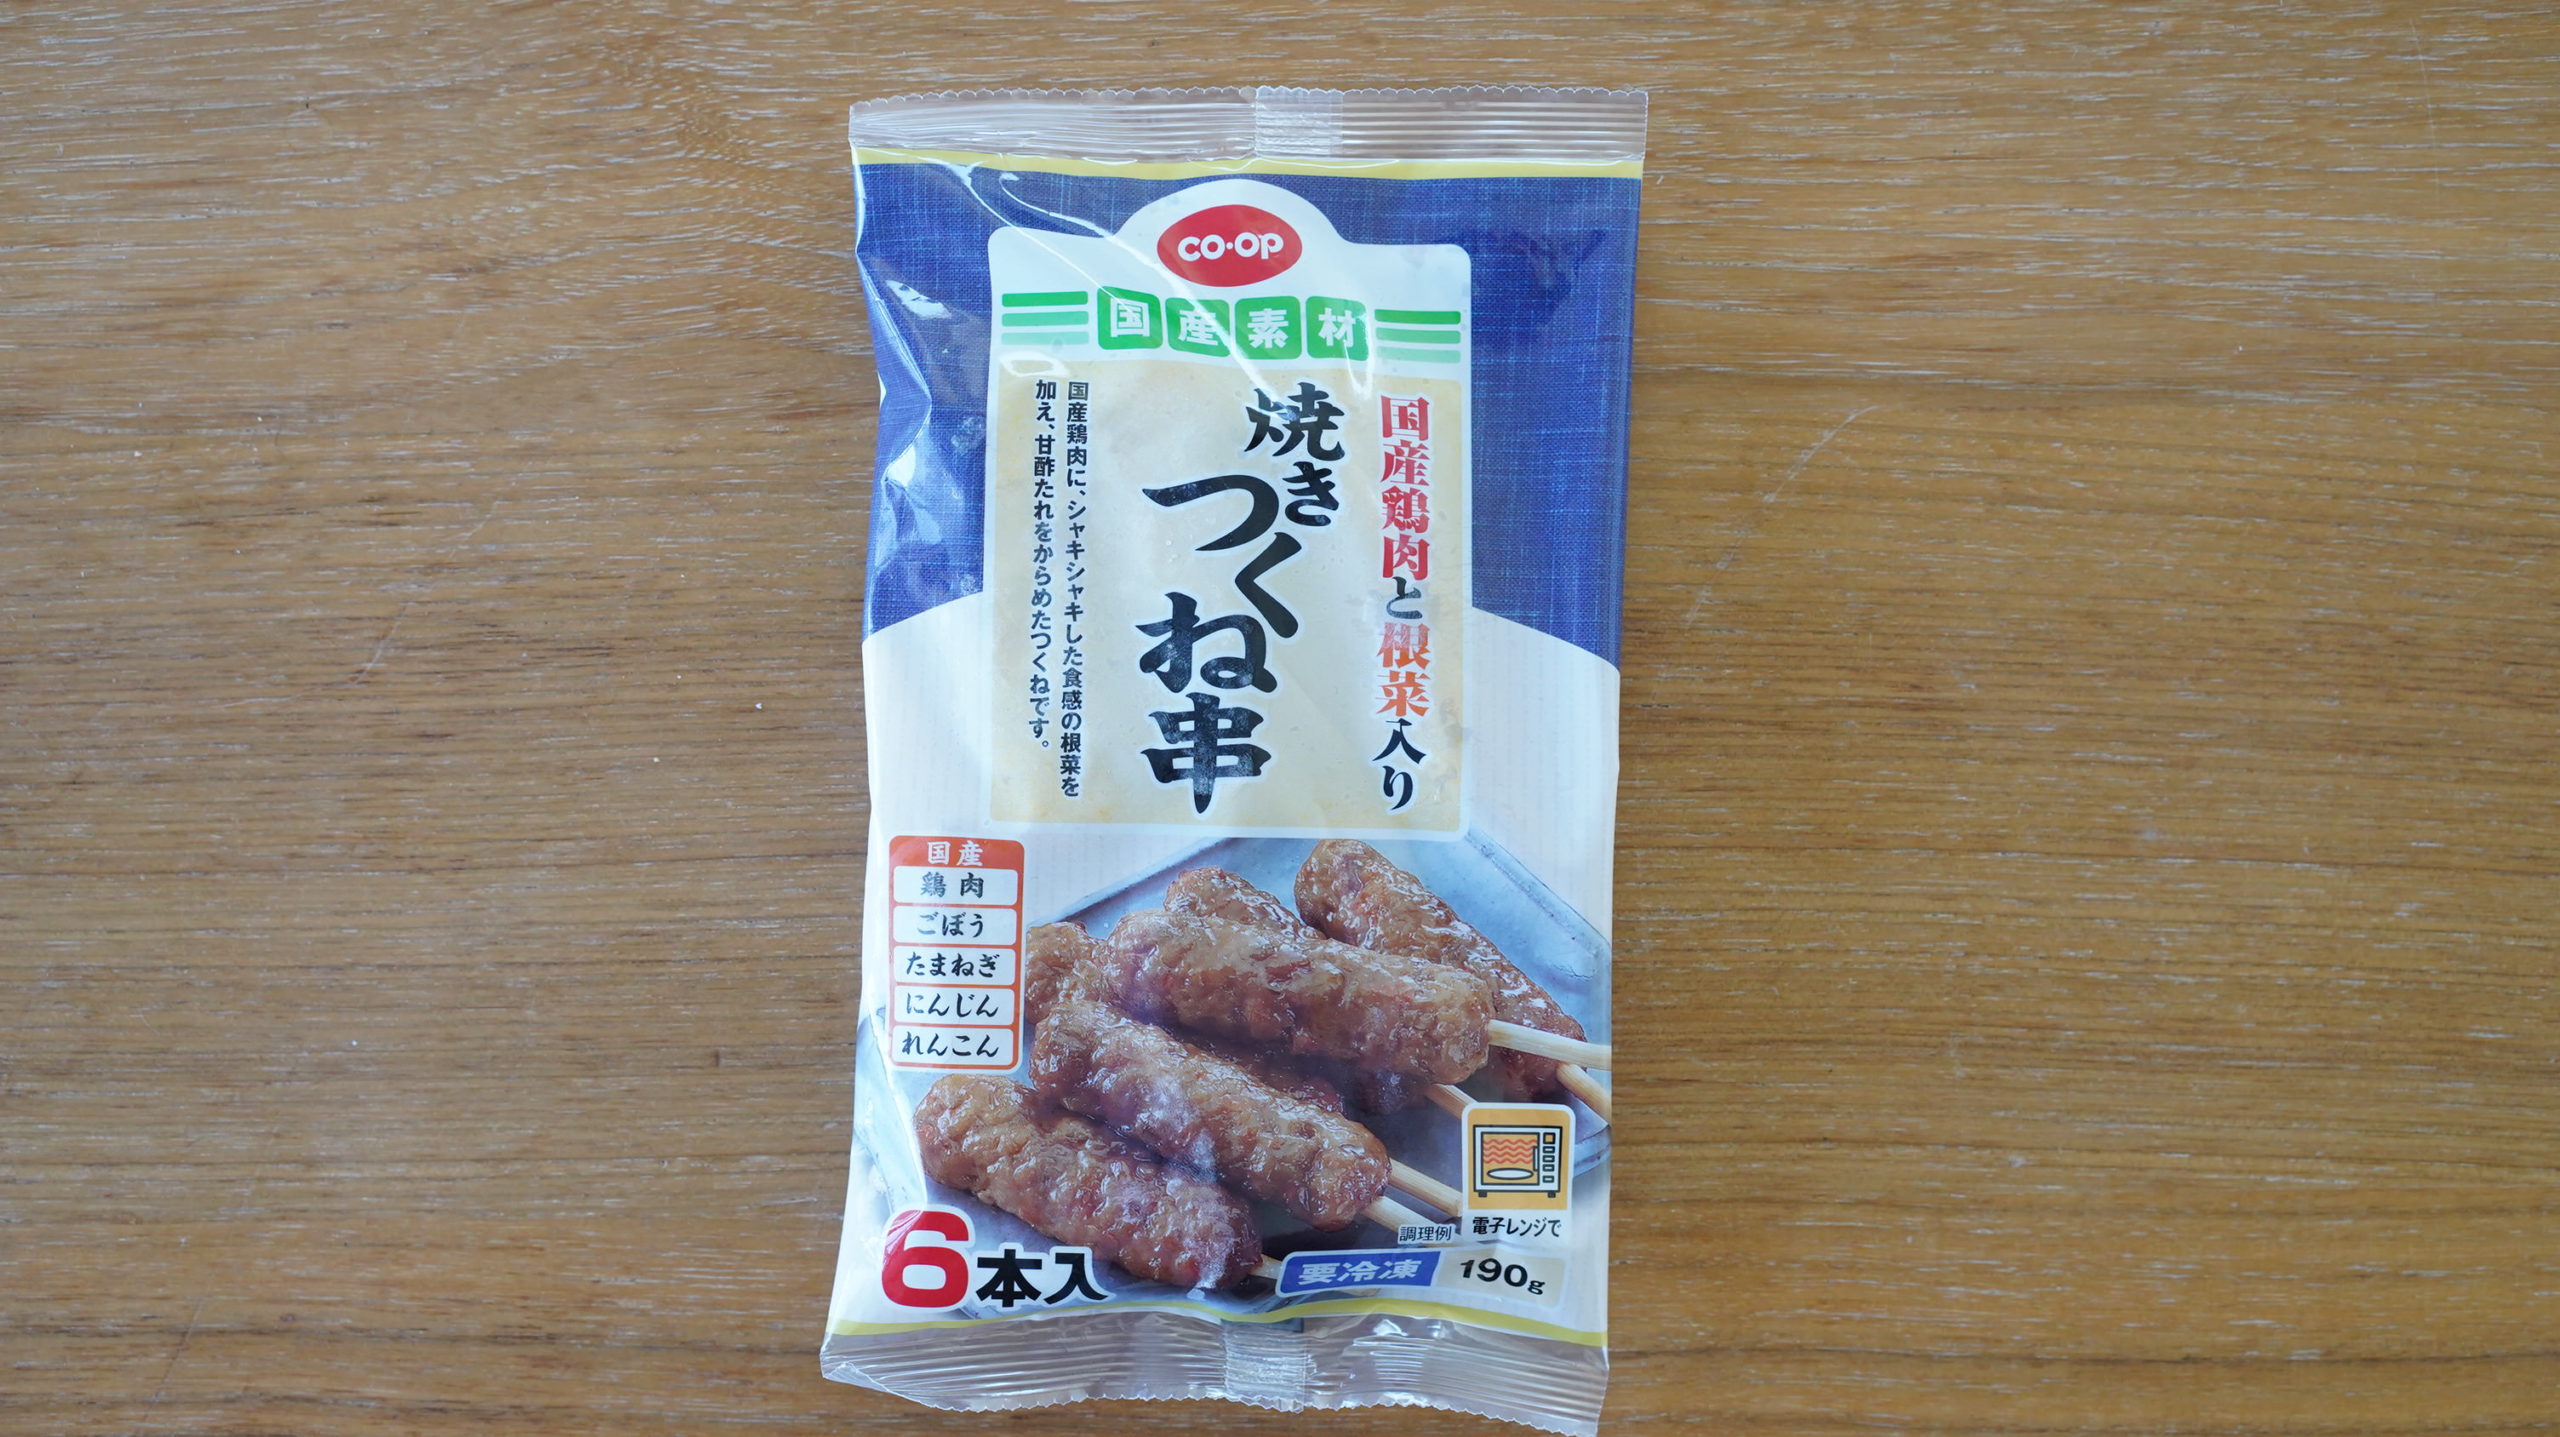 生協coop宅配の冷凍食品・ニチレイ「国産素材・焼きつくね串」のパッケージ写真